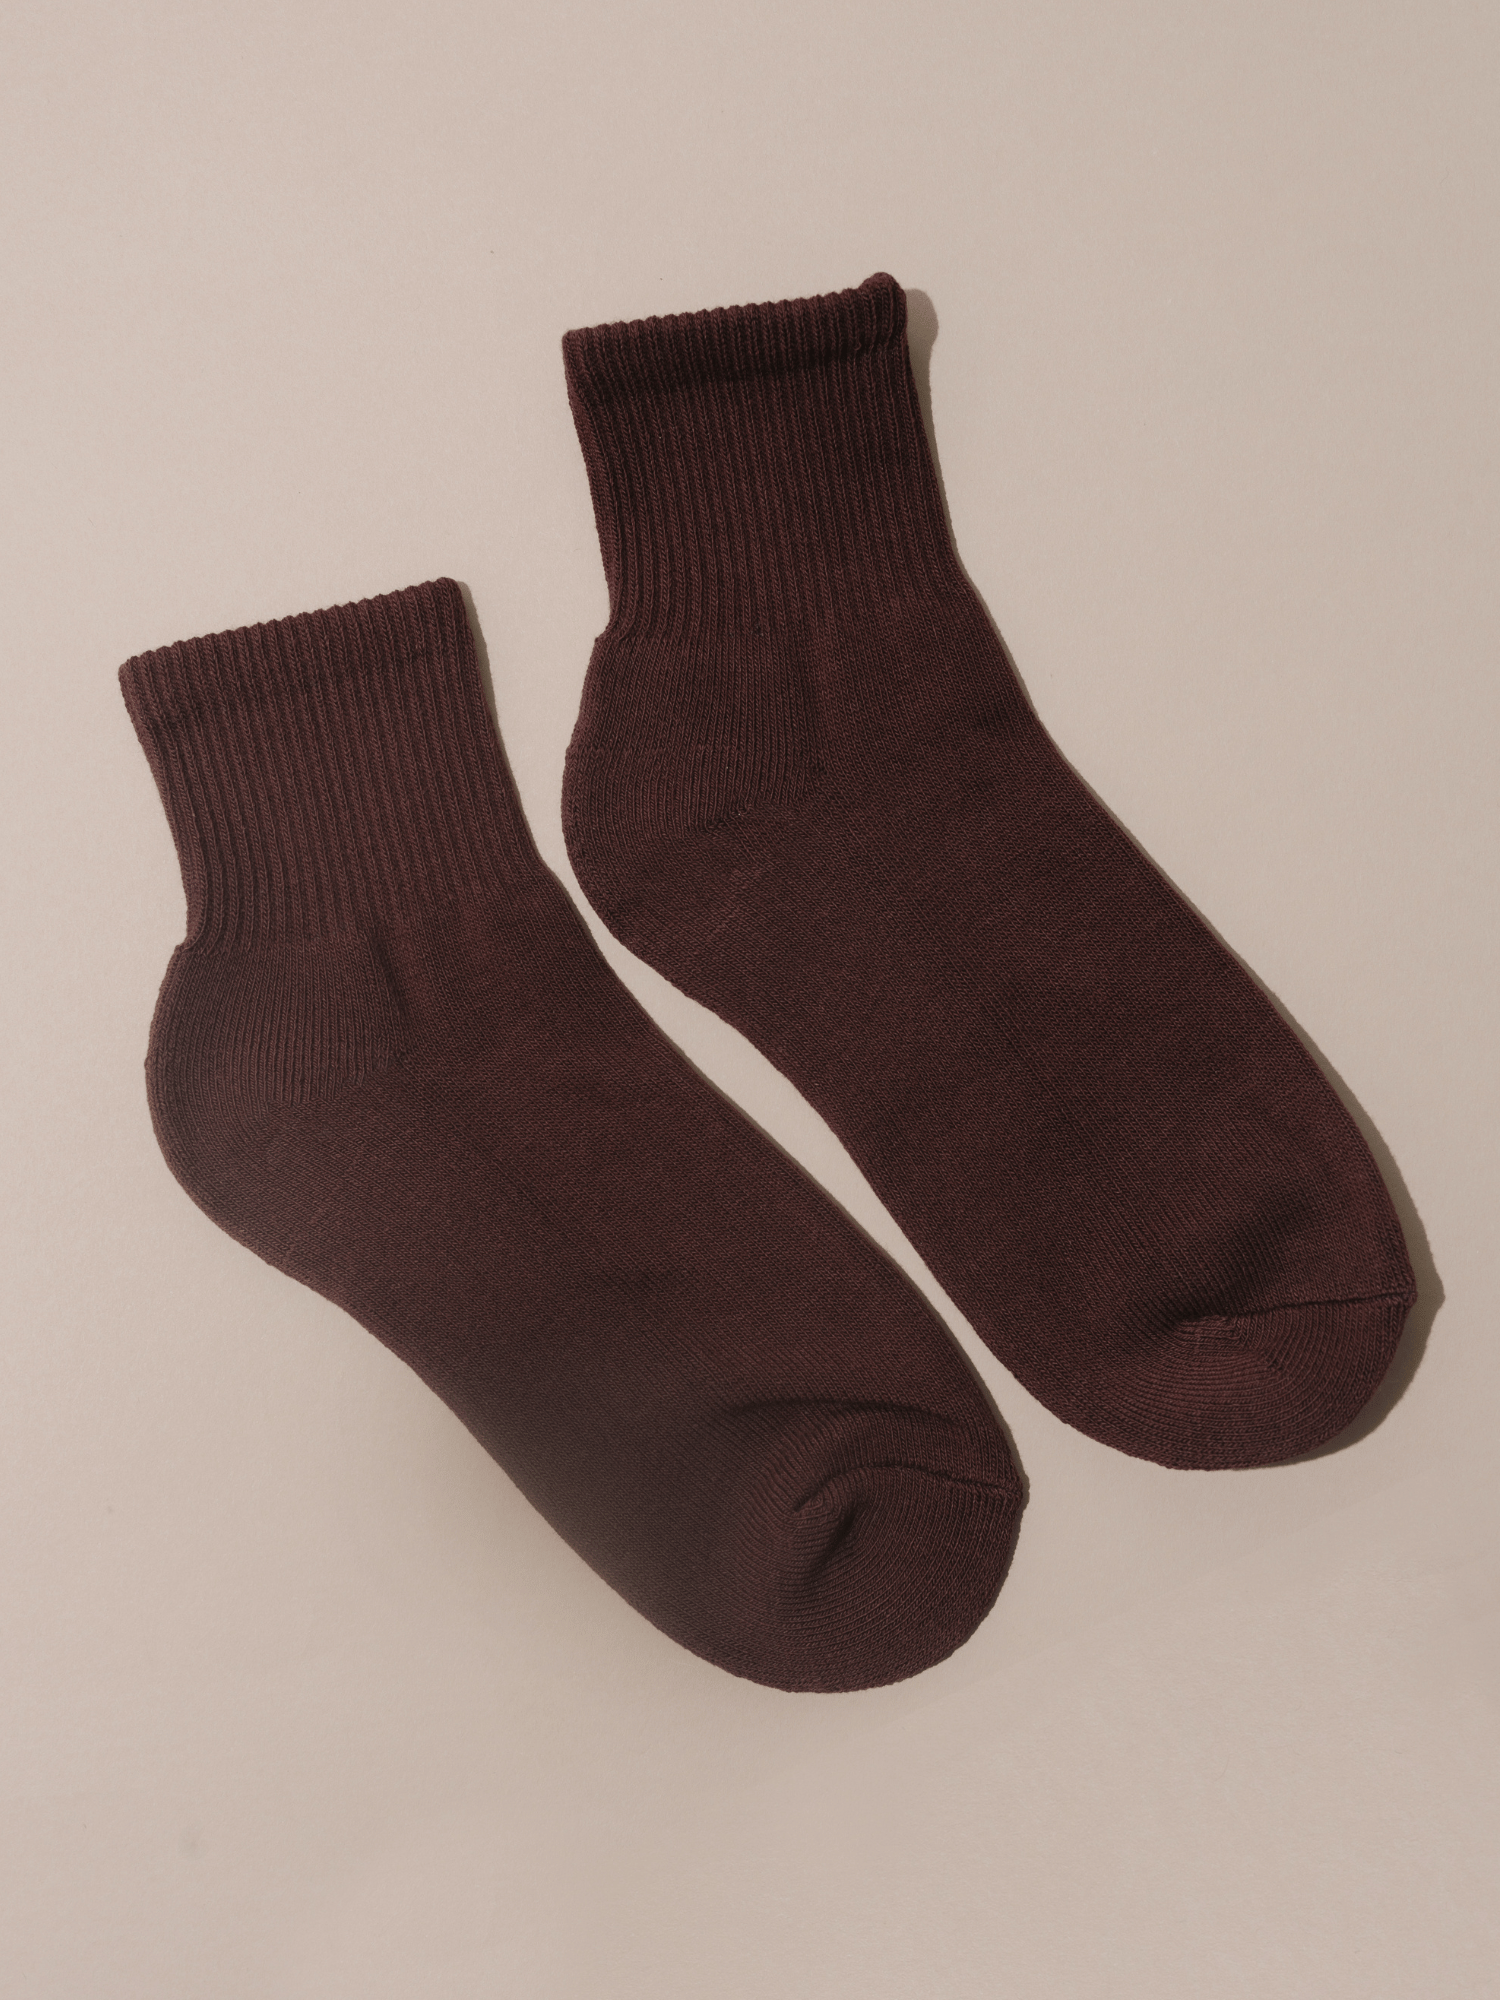 Nat + Noor Cotton Blend Ankle Socks